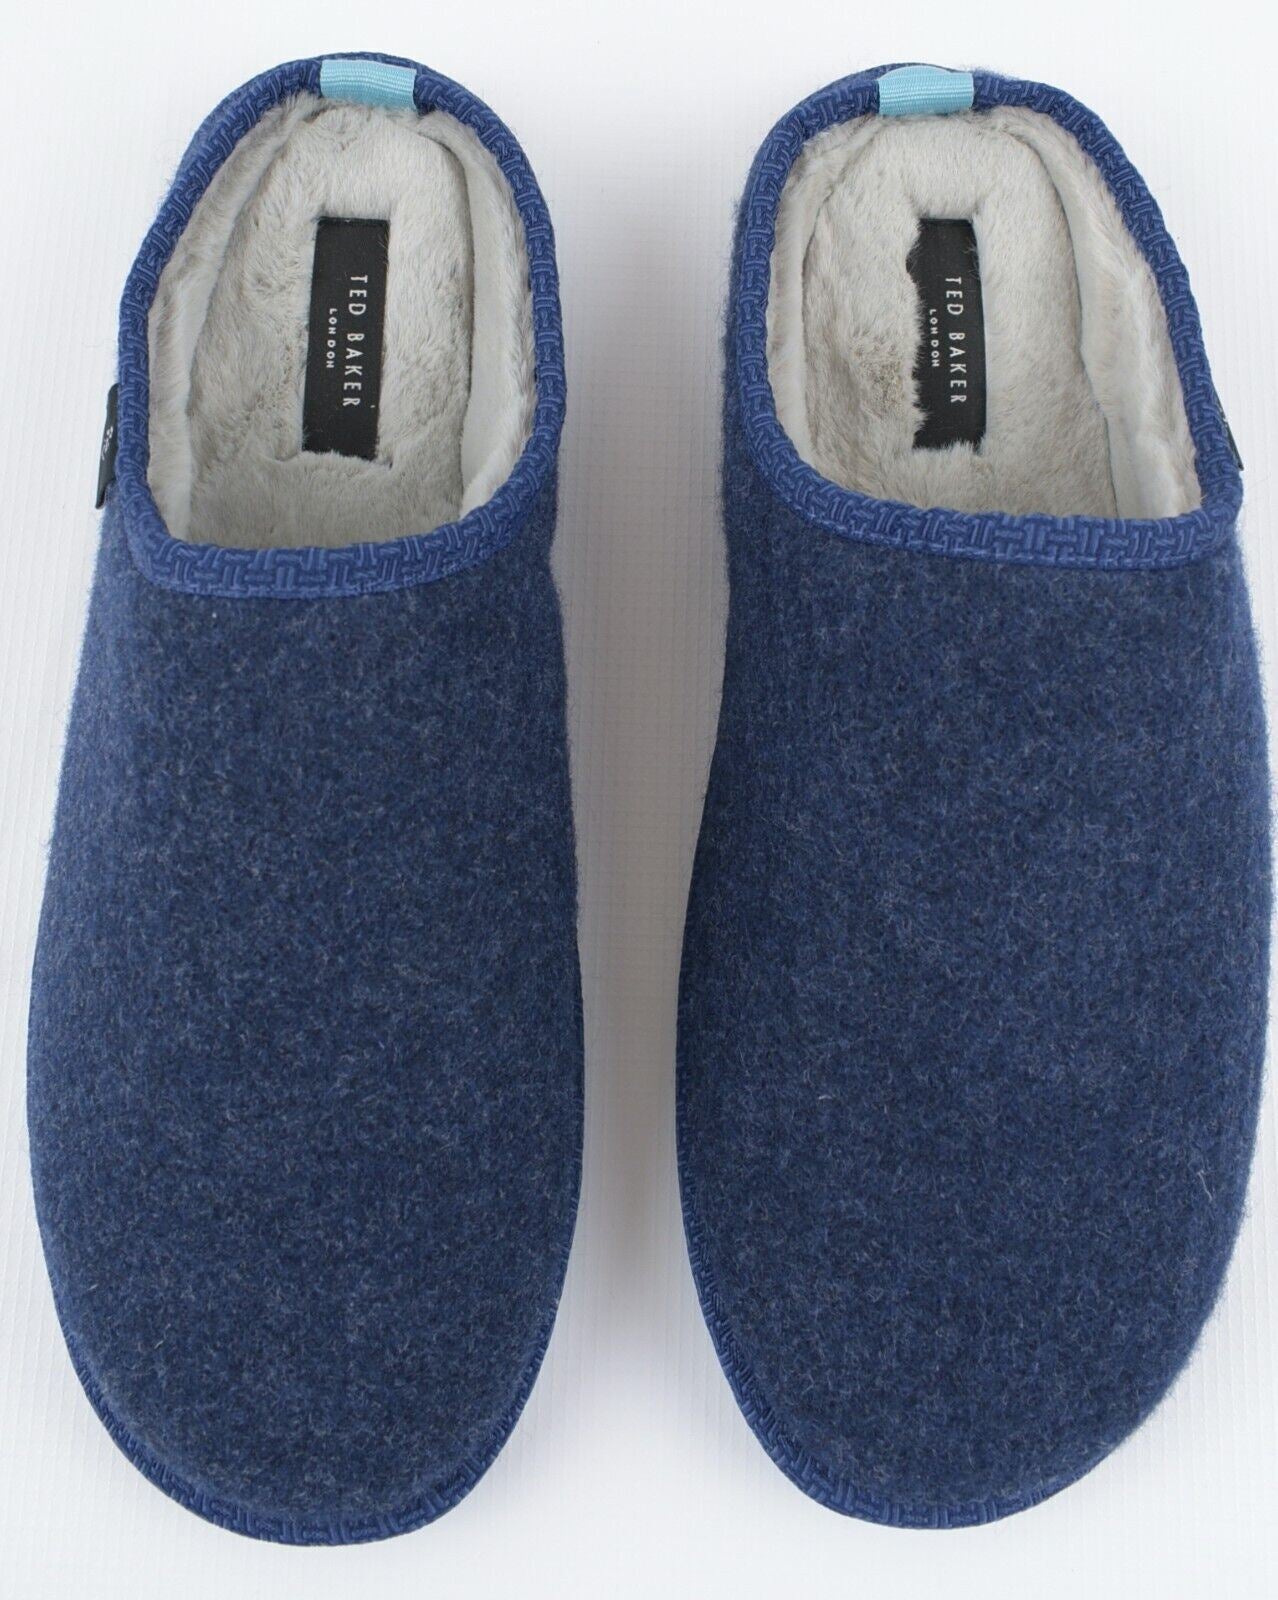 TED BAKER Men's SIMONN Felt Mulet Sole Slippers, Blue, size UK 7 /EU 1